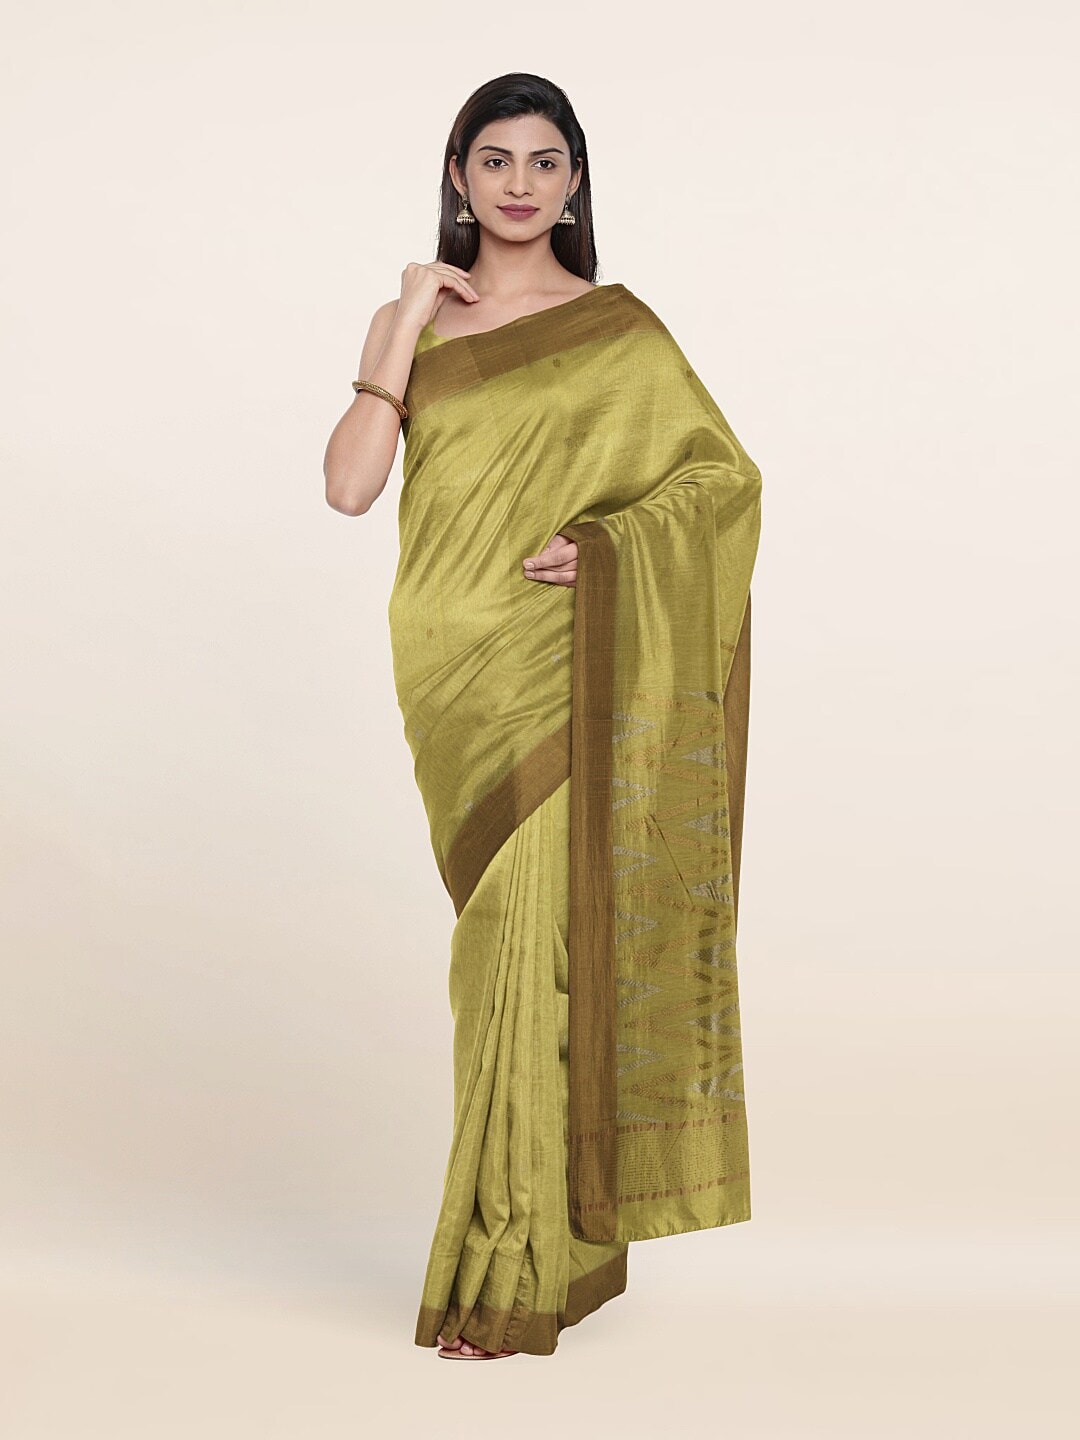 Pothys Yellow & Copper-Toned Zari Silk Cotton Saree Price in India